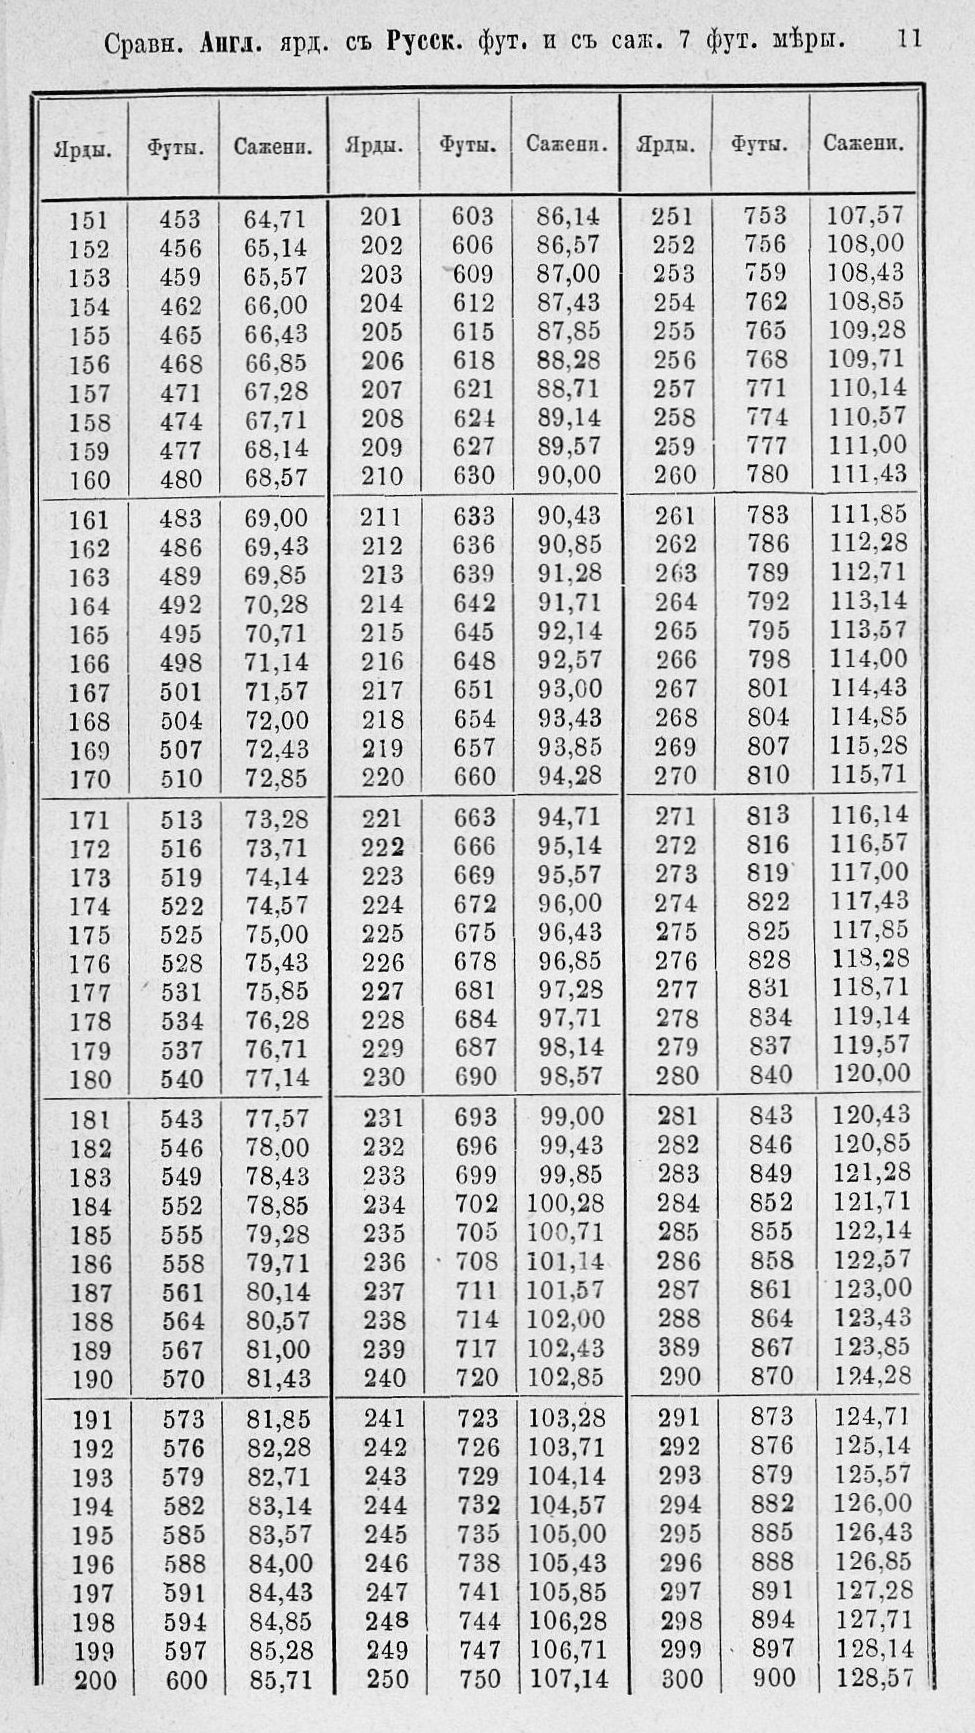 Таблицы для сравнения иностранных линейных мер 0011.jpg